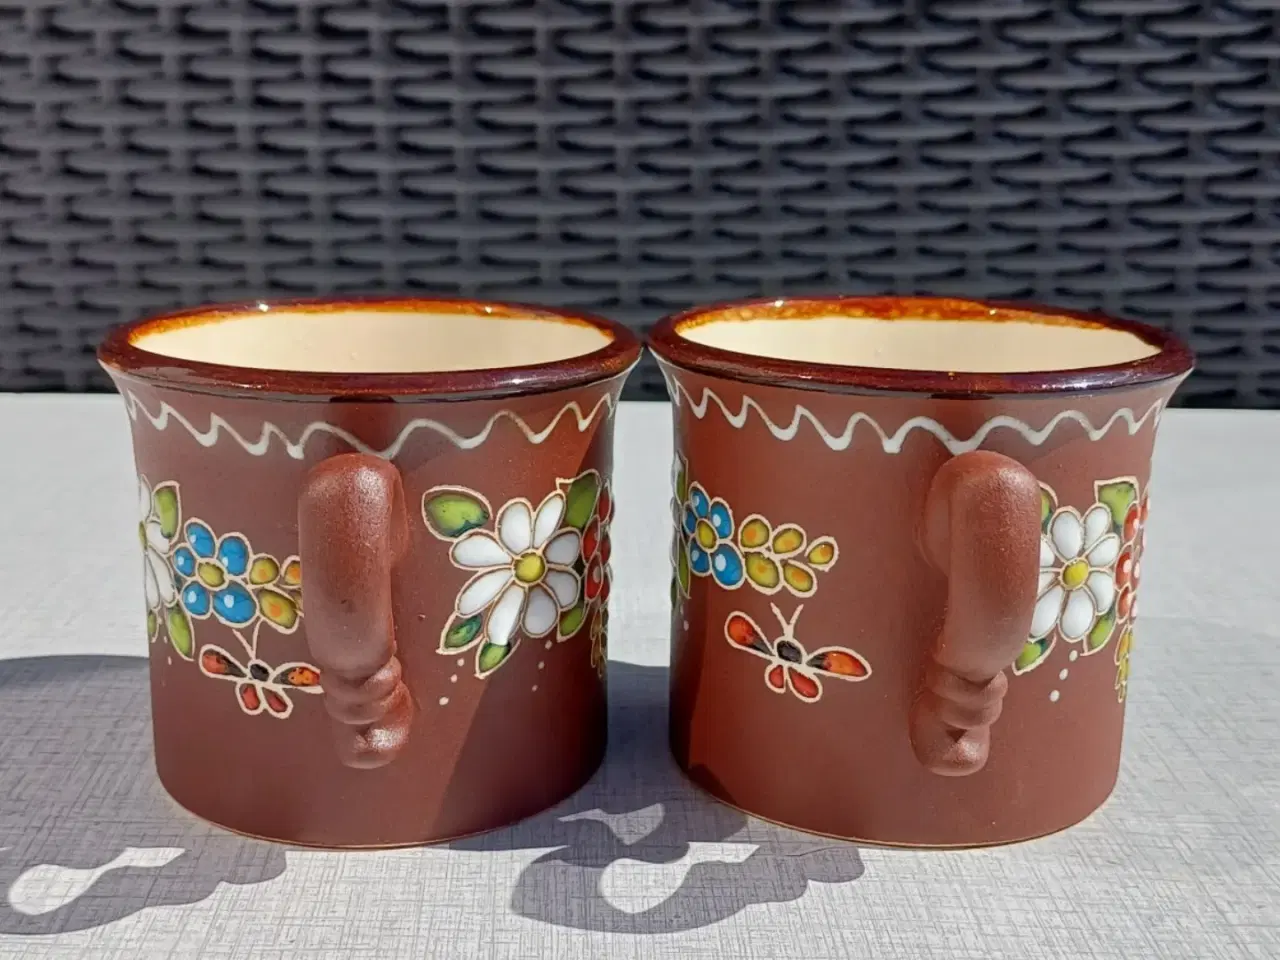 Billede 3 - To håndmalede kopper i keramik. Blomstermotiv.